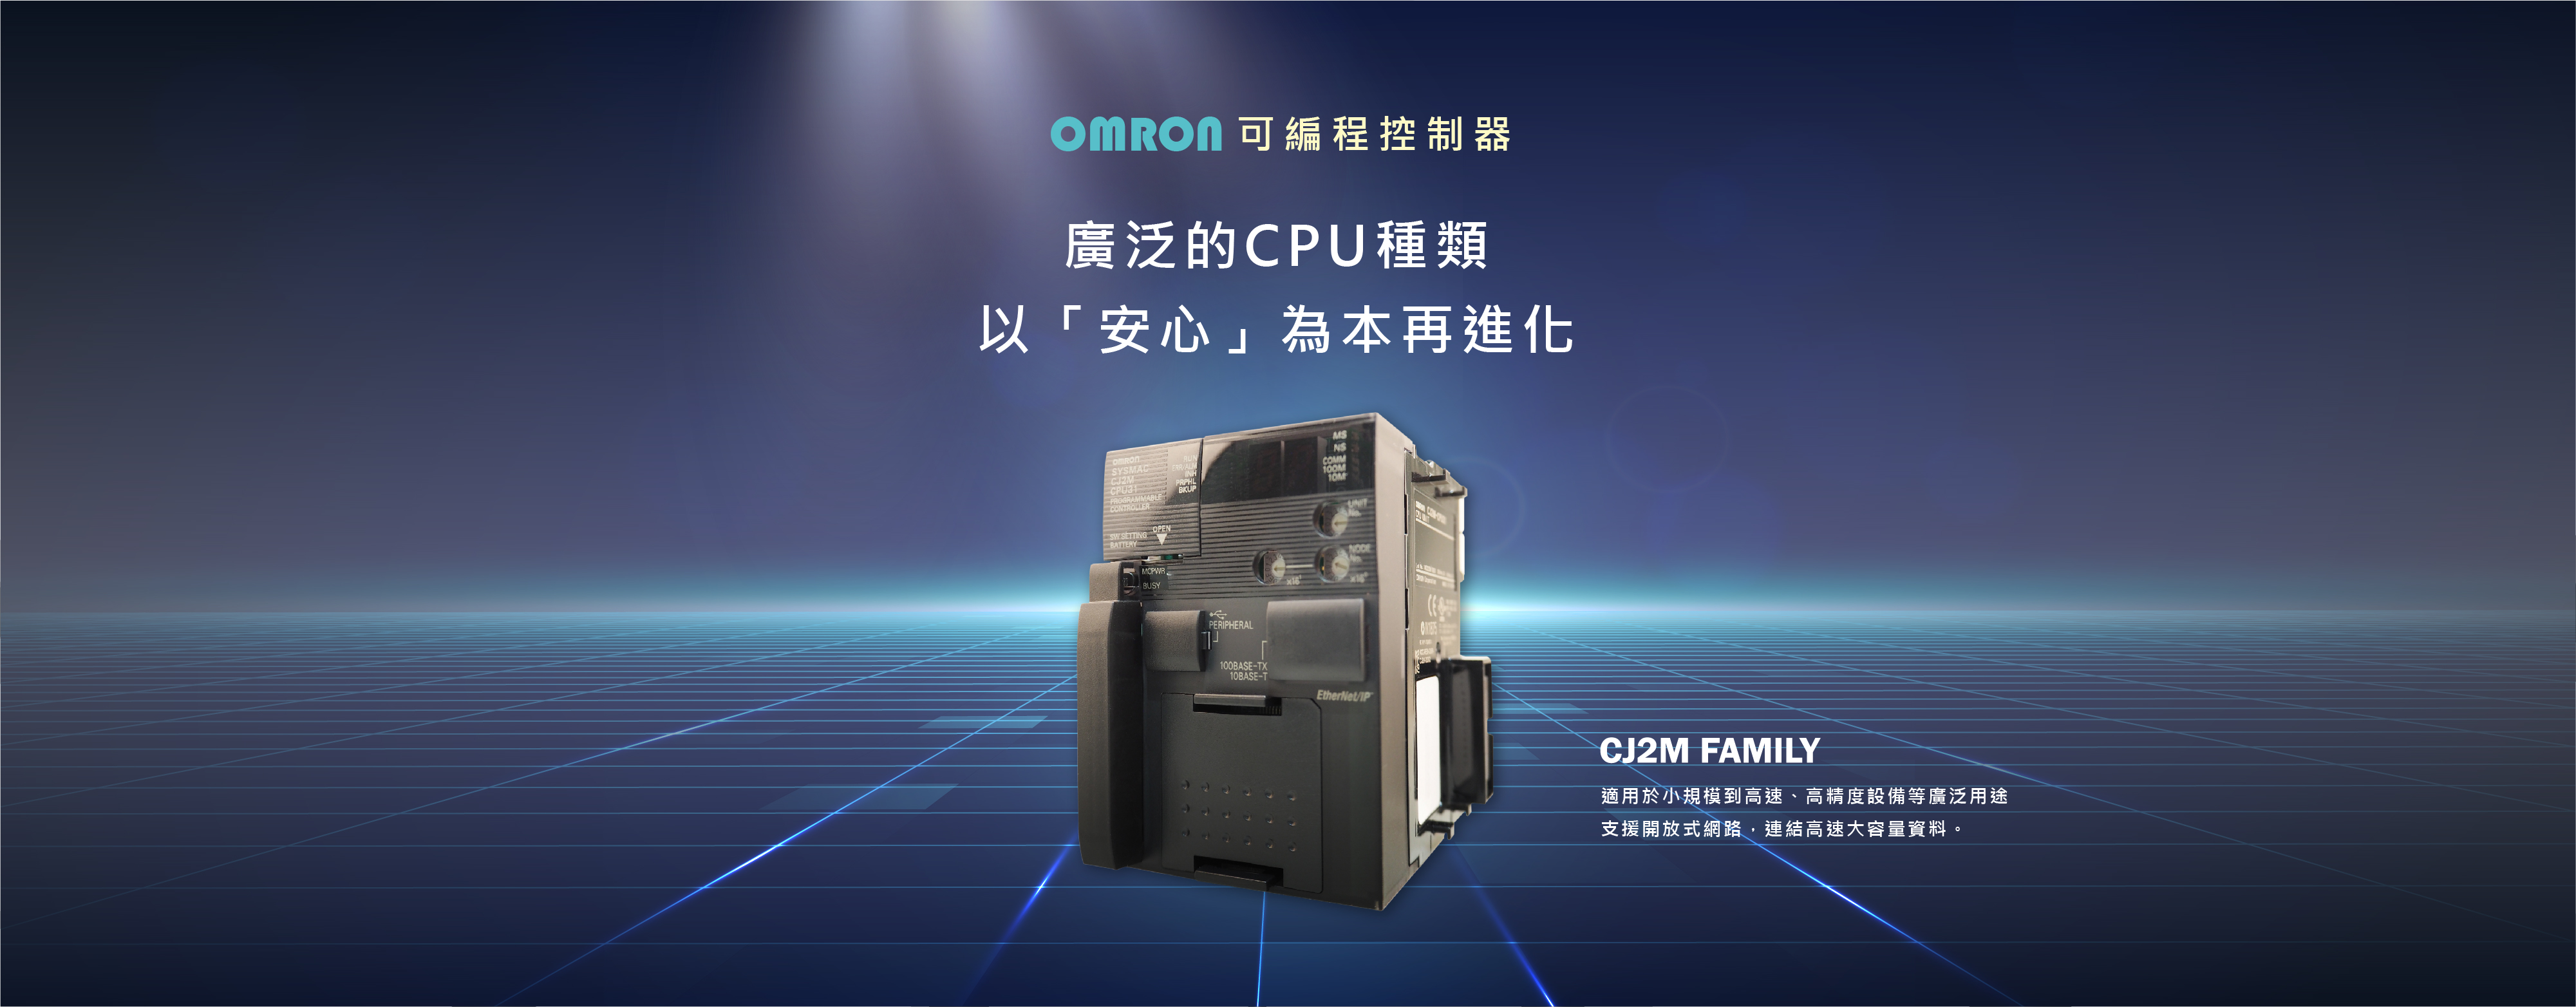 CJ2M CPU31